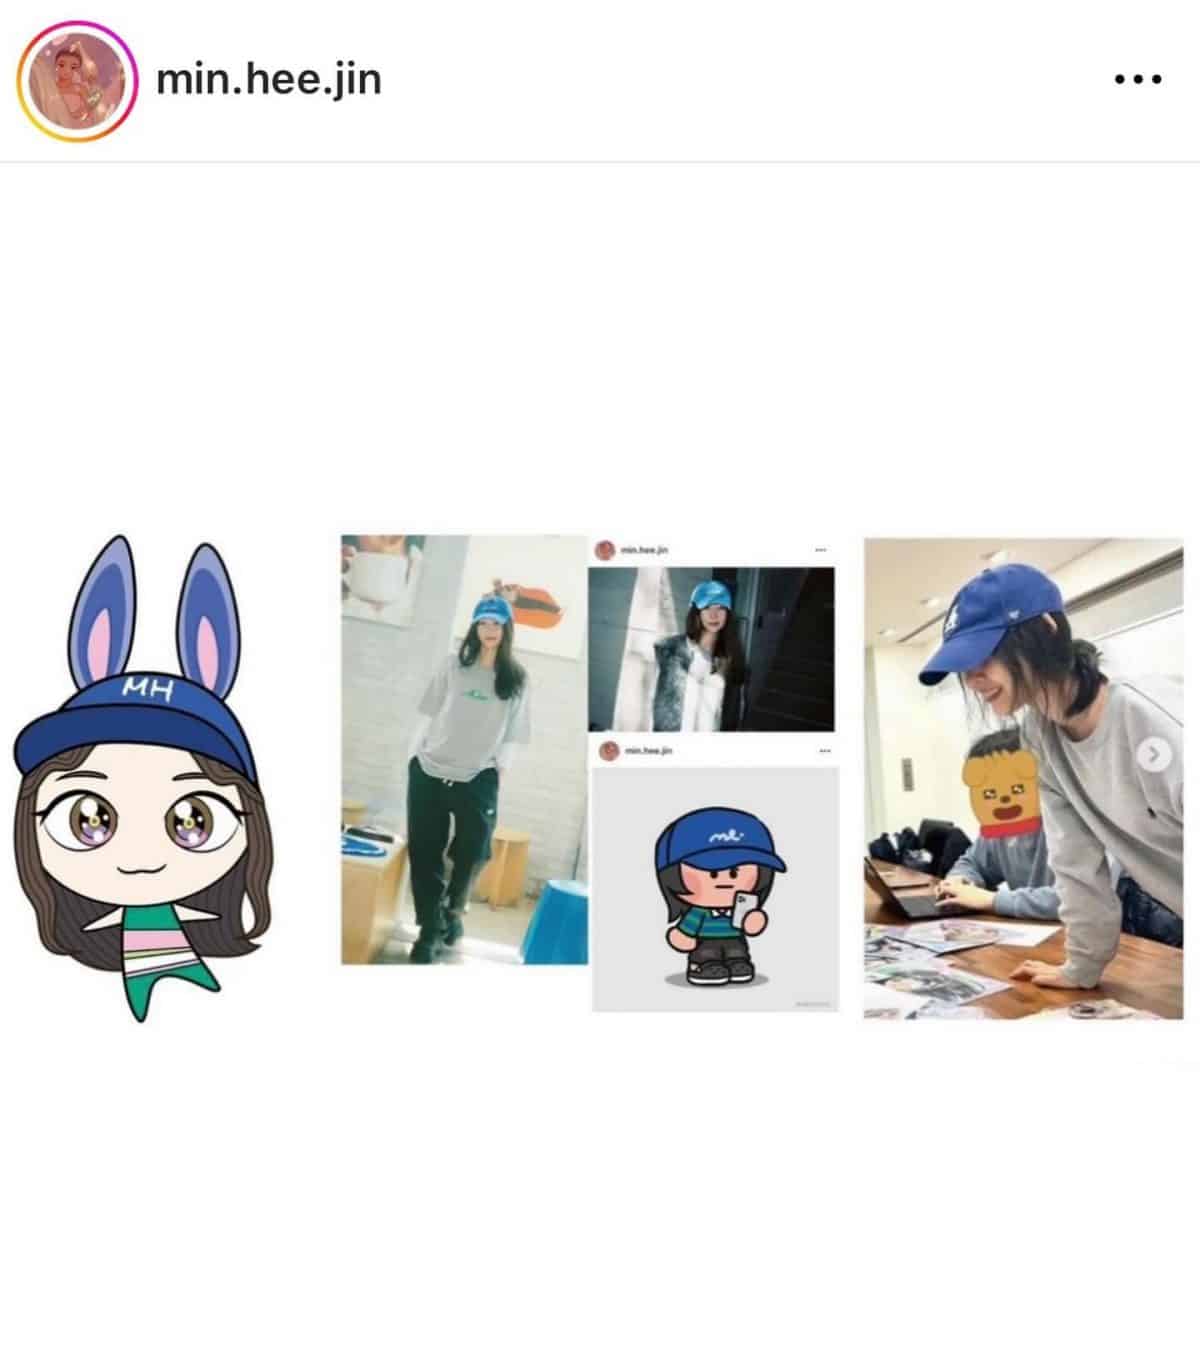 Мин Хи Джин получила трогательный рисунок персонажа от художника Такаши Мураками